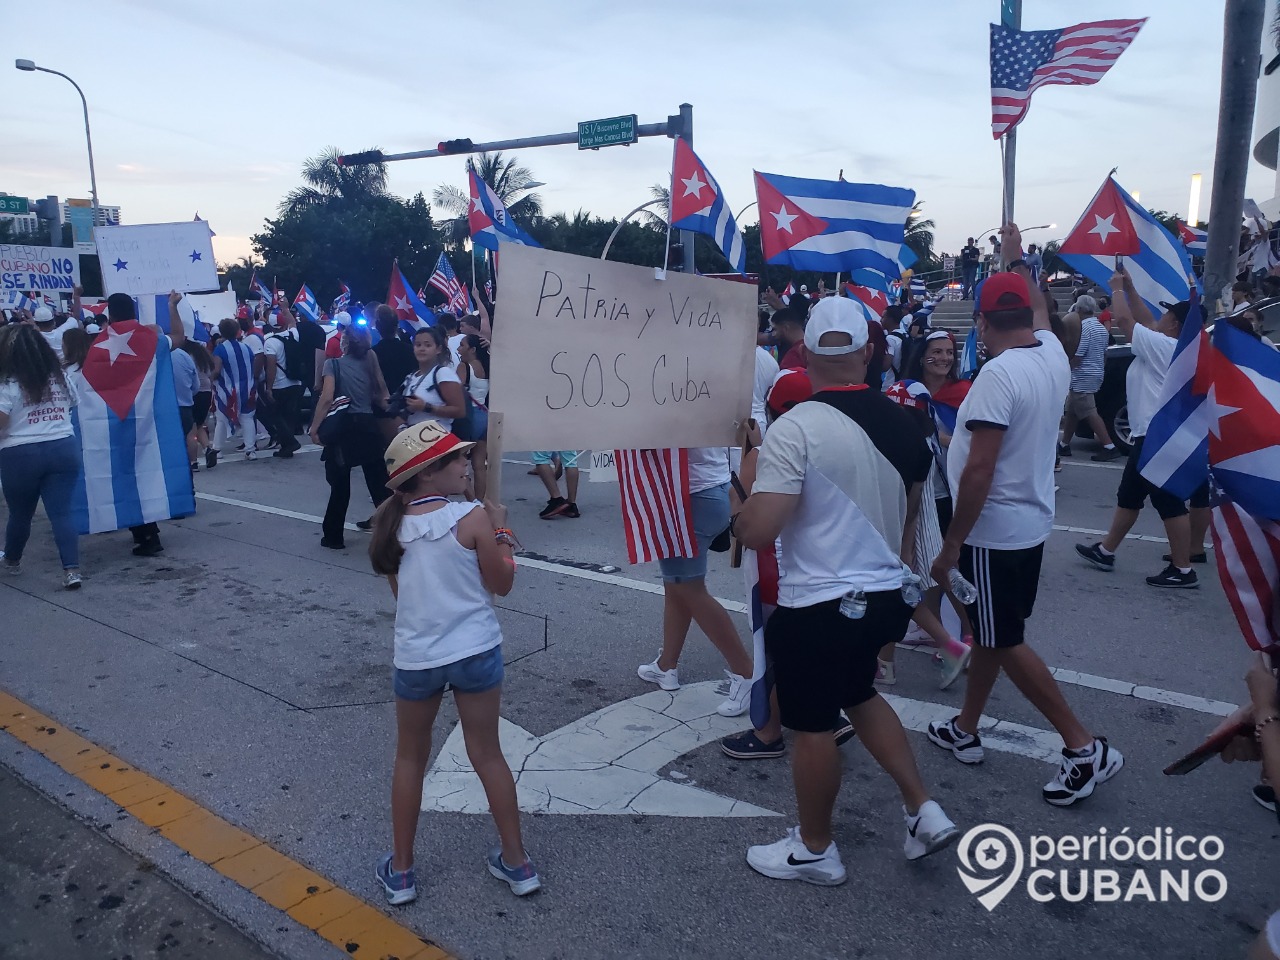 Unión Europea sobre las protestas en Cuba: “Estamos muy preocupados por la represión”